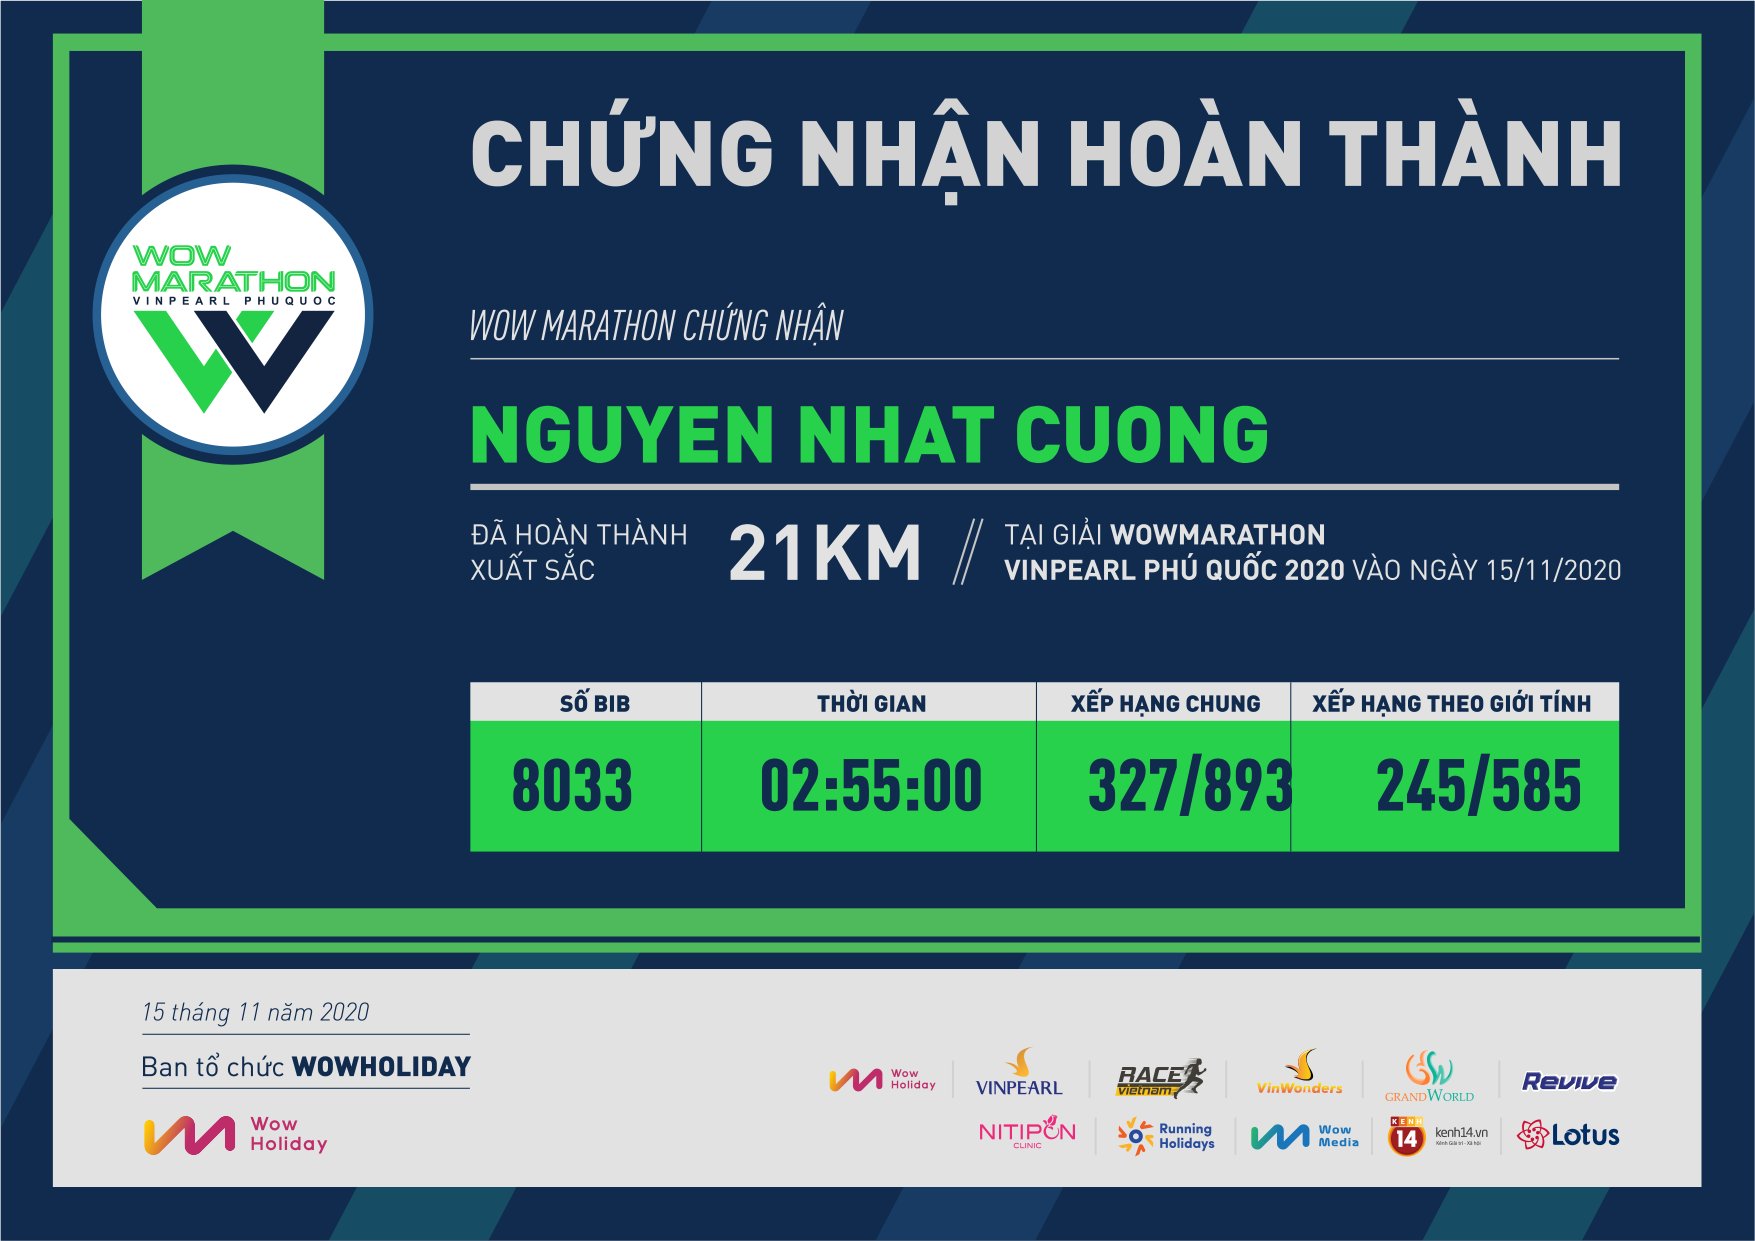 8033 - Nguyen Nhat Cuong